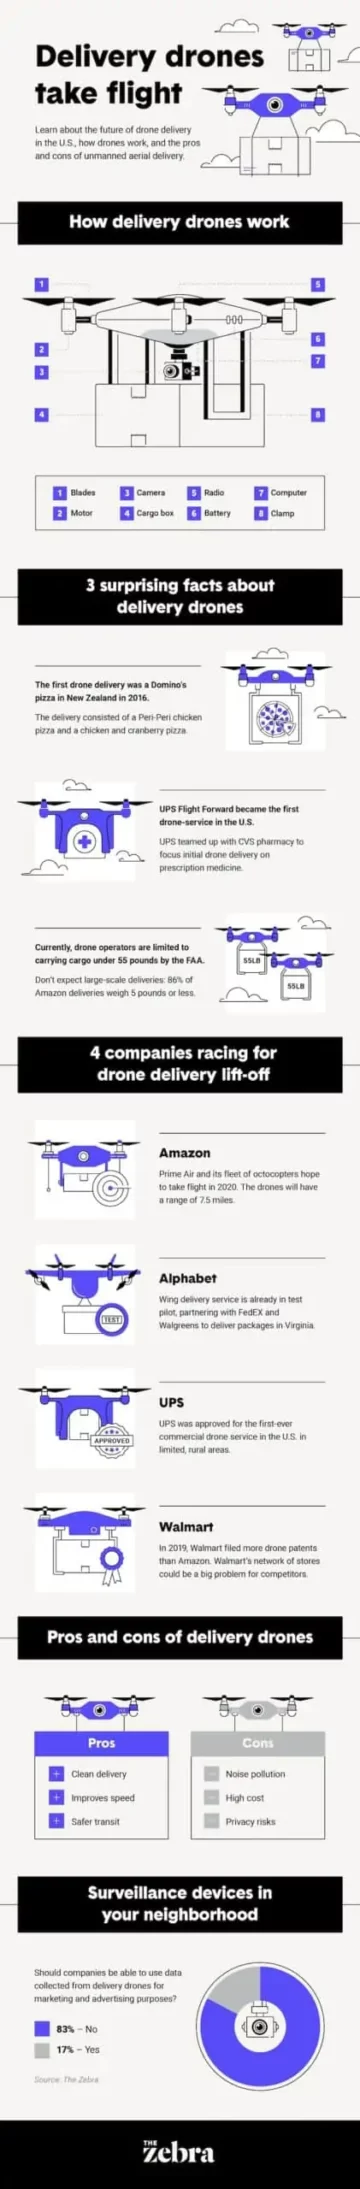 Kako delujejo dostavni droni! (Infografika) - Supply Chain Game Changer™